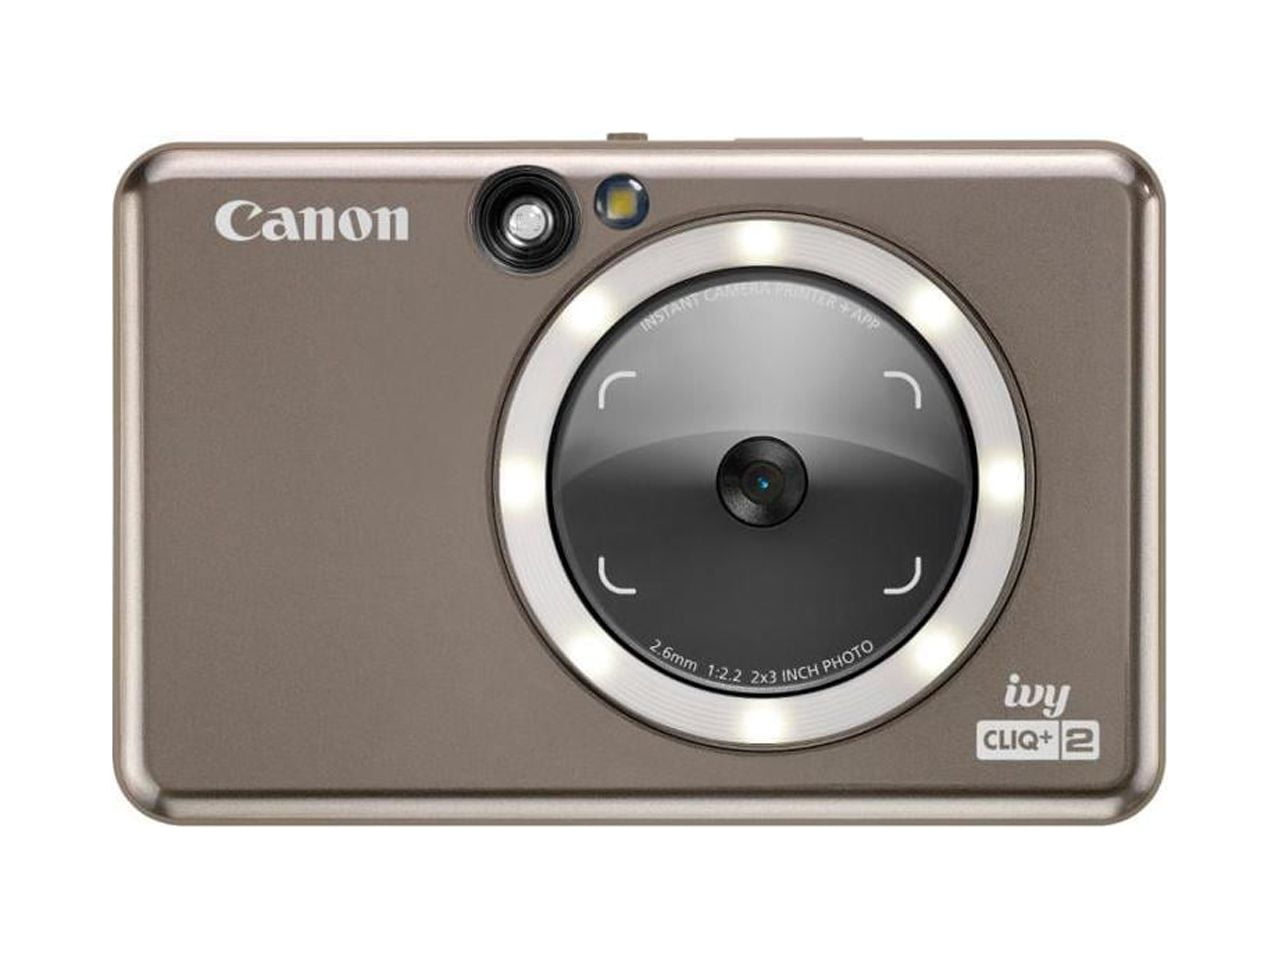 Canon Ivy Cliq + 2 Instant Film Camera - Metallic Mocha Model 4519C004